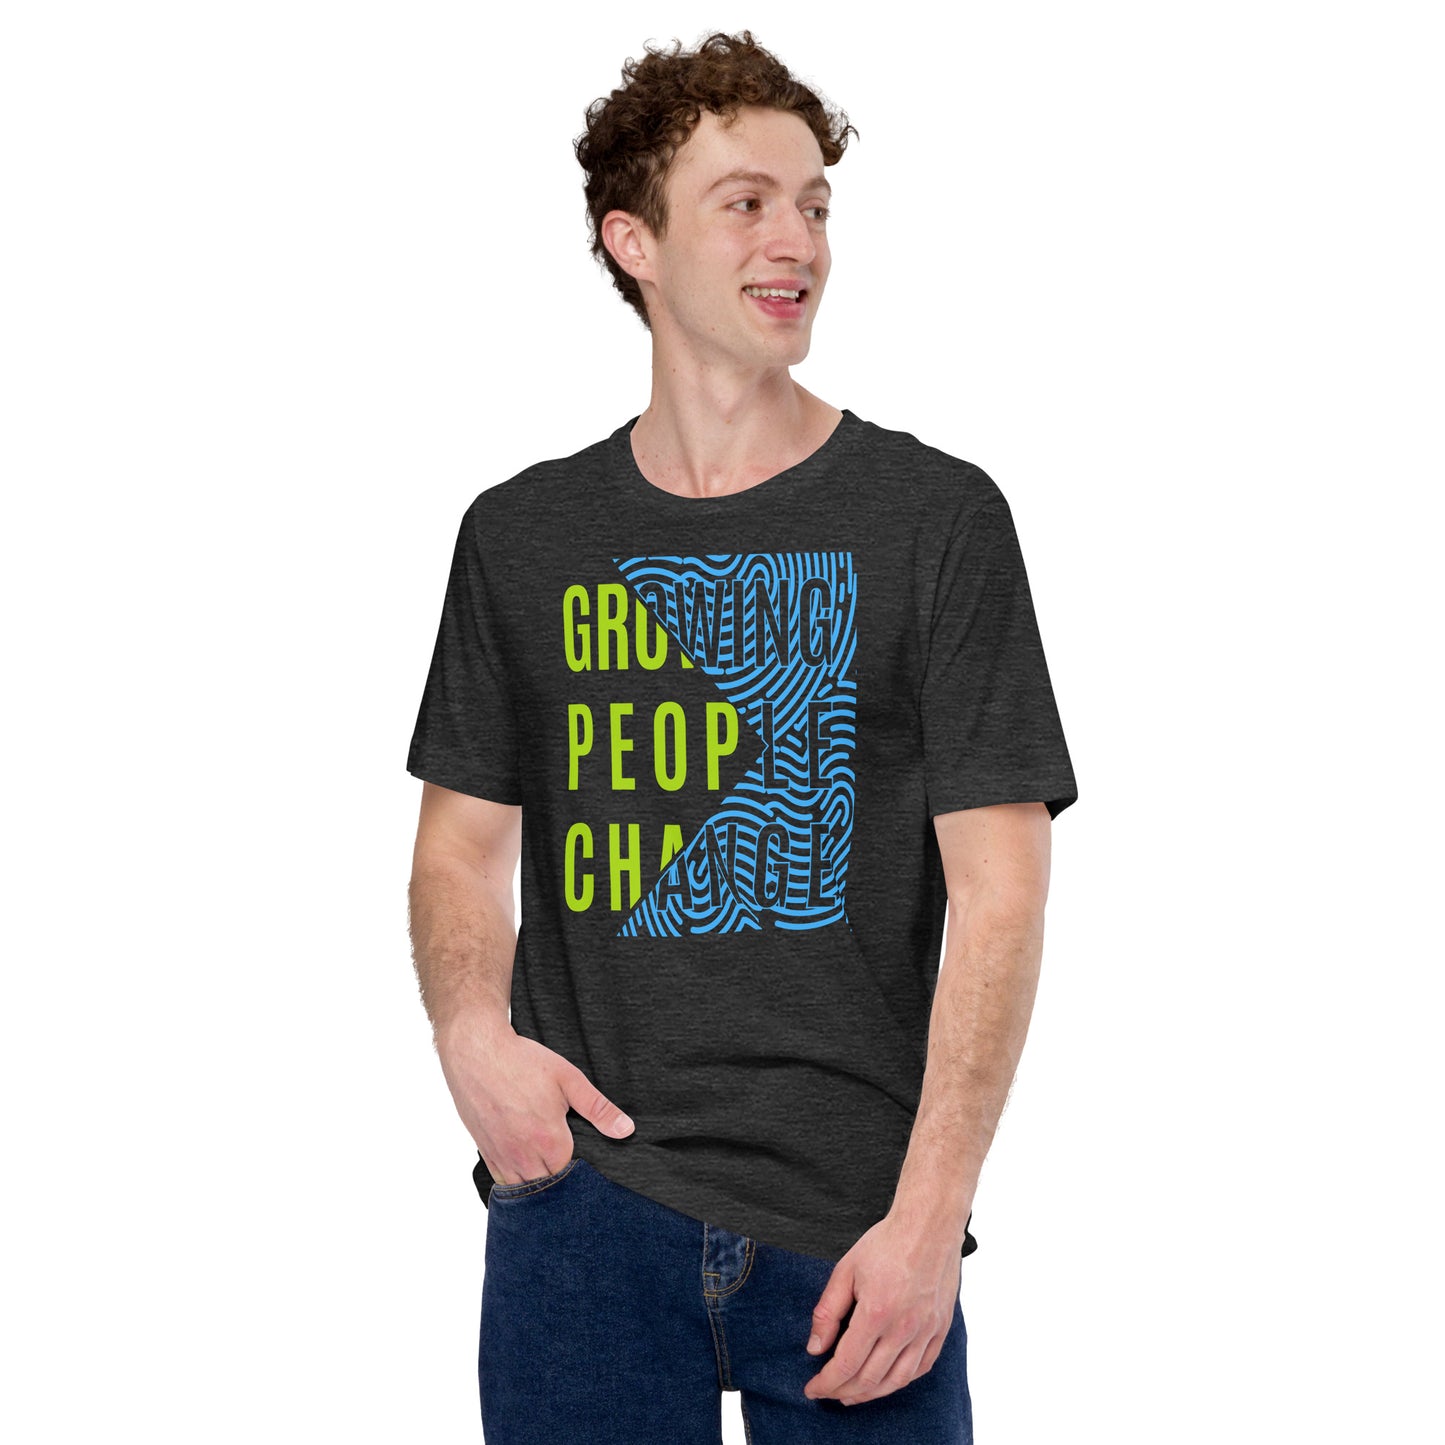 Growing People Change - Unisex t-shirt